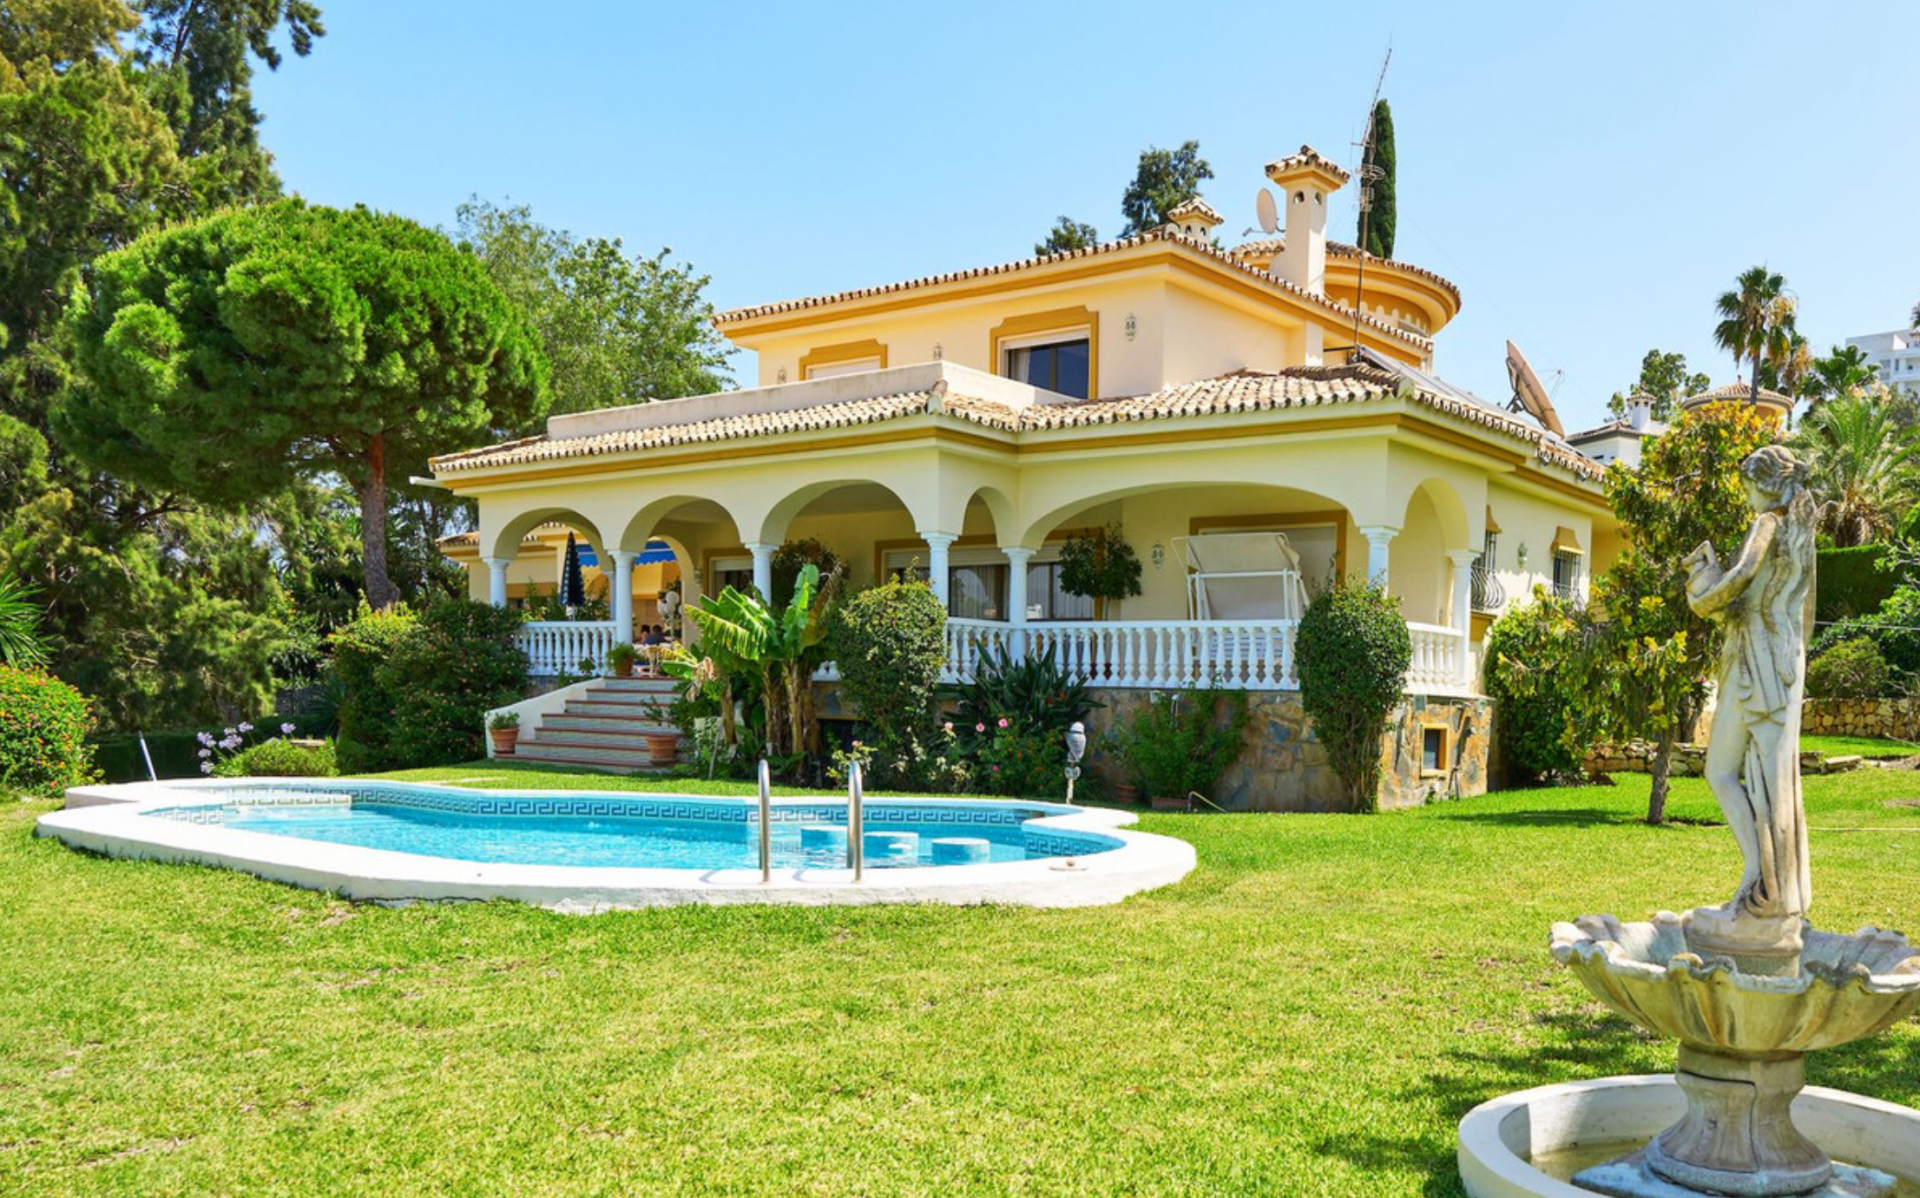 Villa de estilo andaluz, orientada al sur, situada en una zona tranquila de El Paraíso